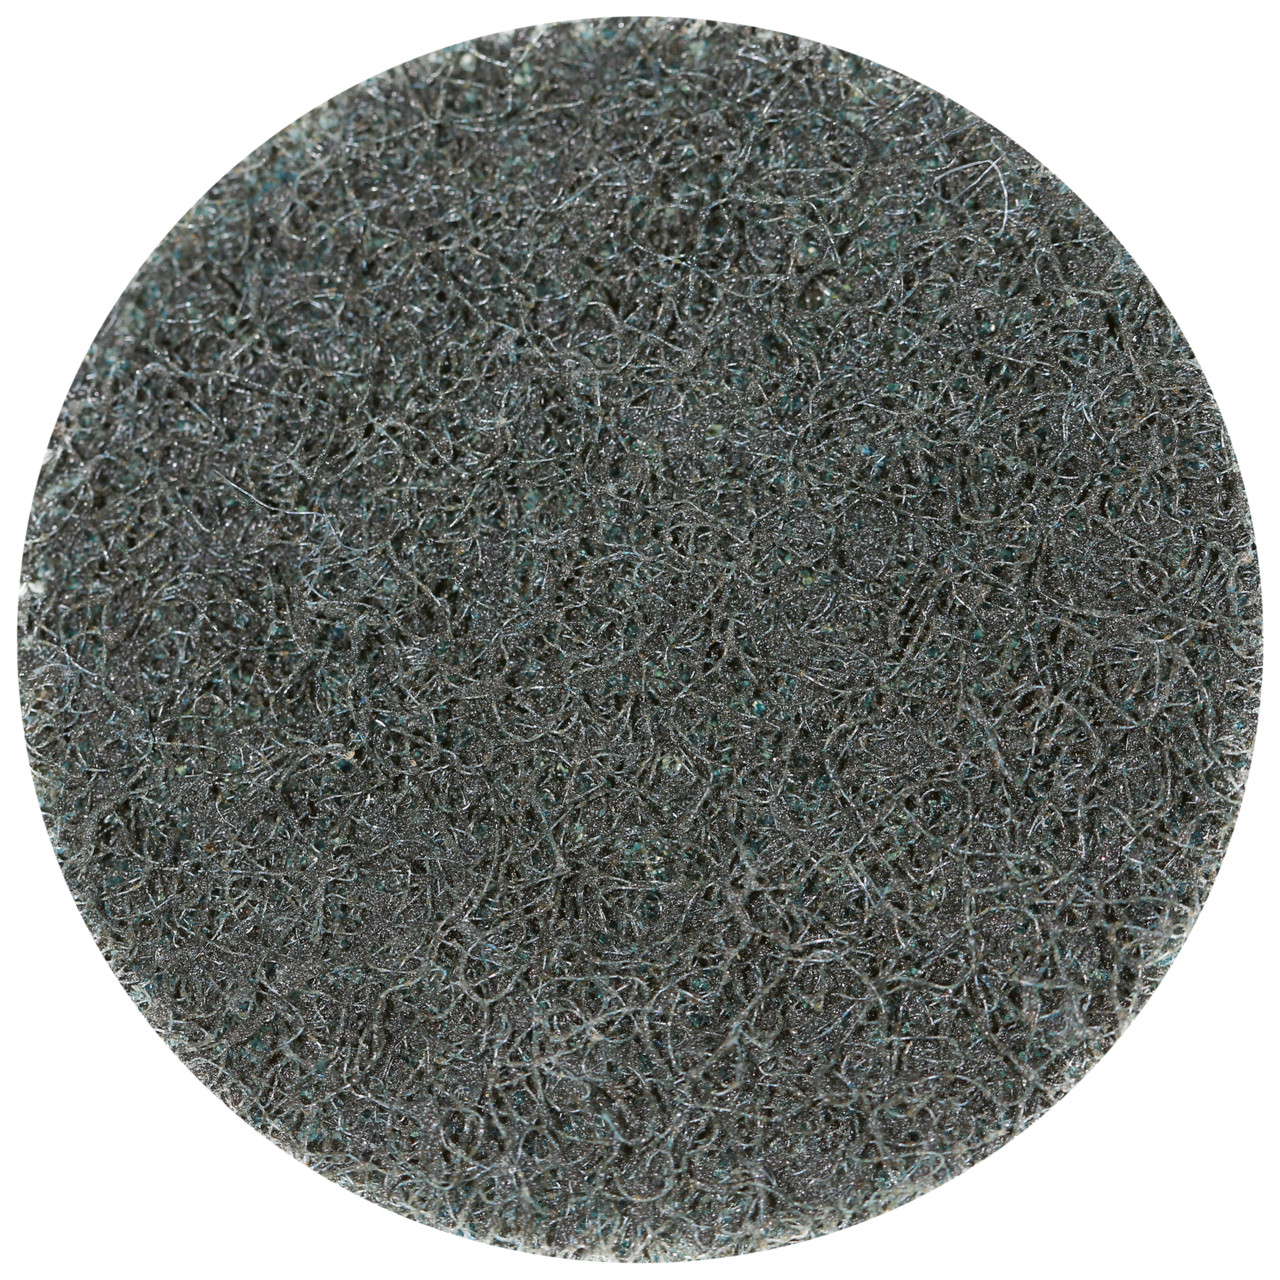 Tyrolit SCM QUICK CHANGE DISC Dimensione 75xR Per acciaio, acciaio inox, metalli non ferrosi, plastica e legno, MEDIO, forma: QDISC, Art. 112581